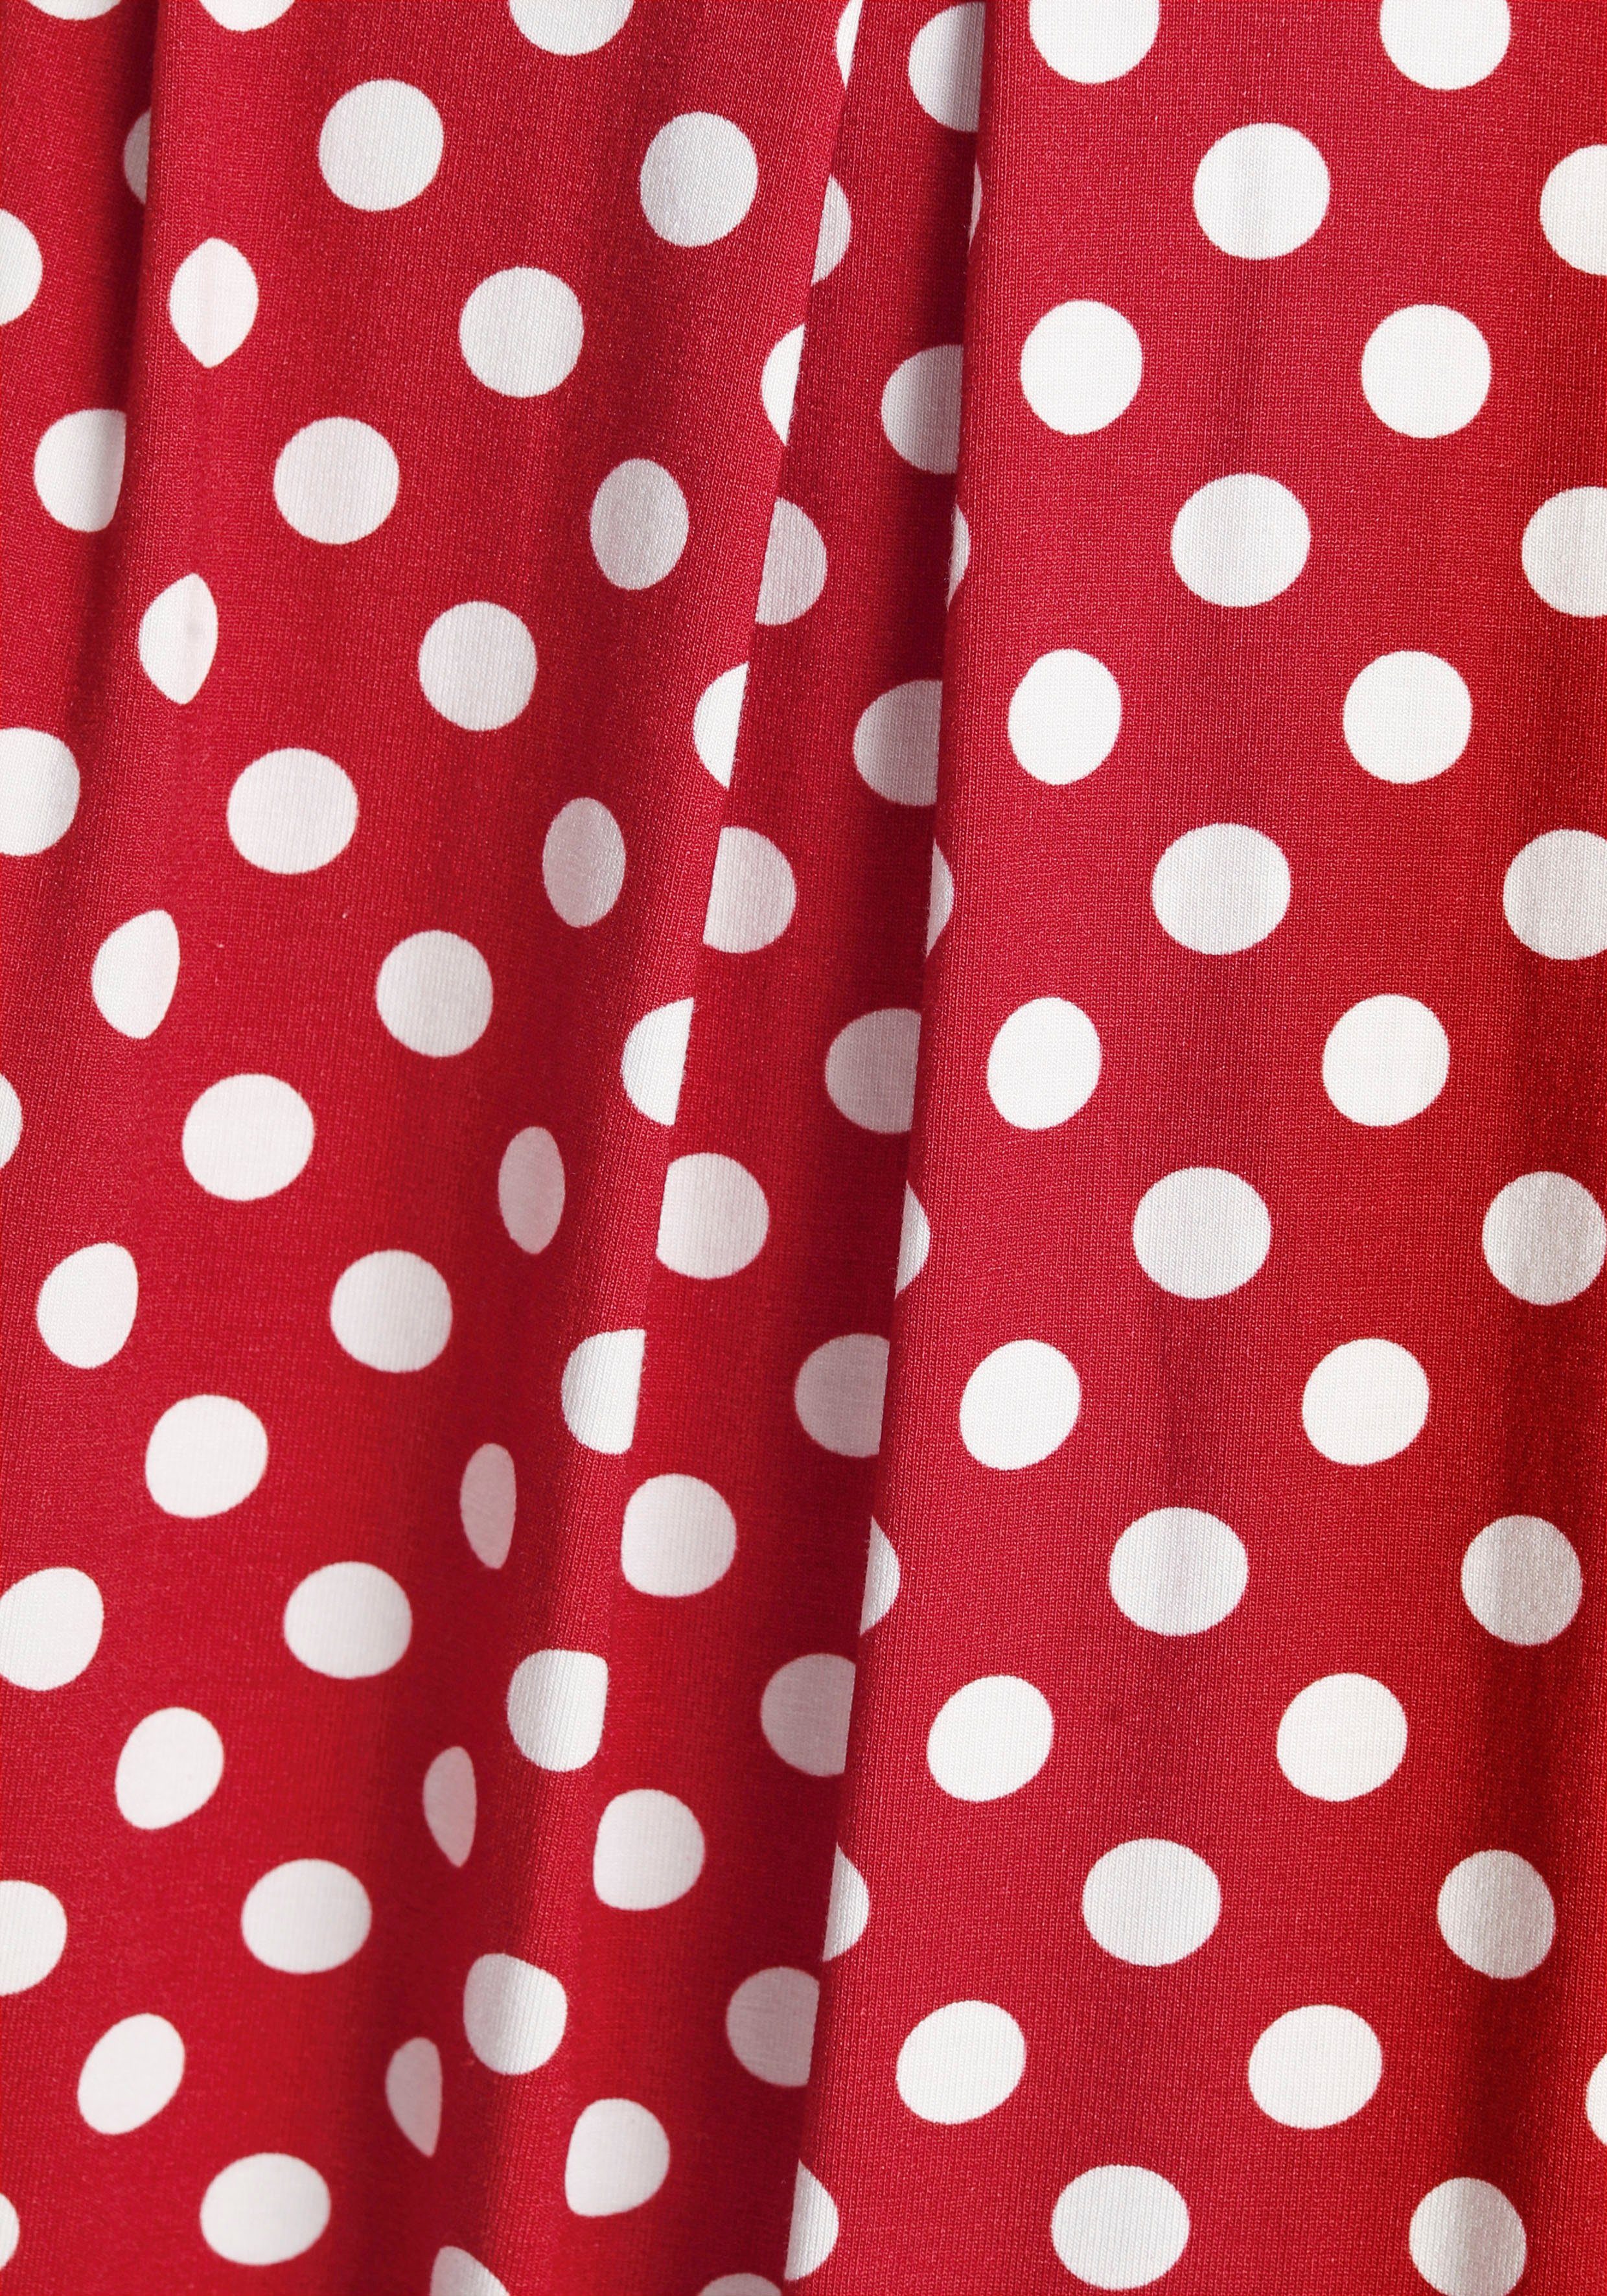 Boysen's Jerseykleid mit Tupfen-Print rot, weiß süßem